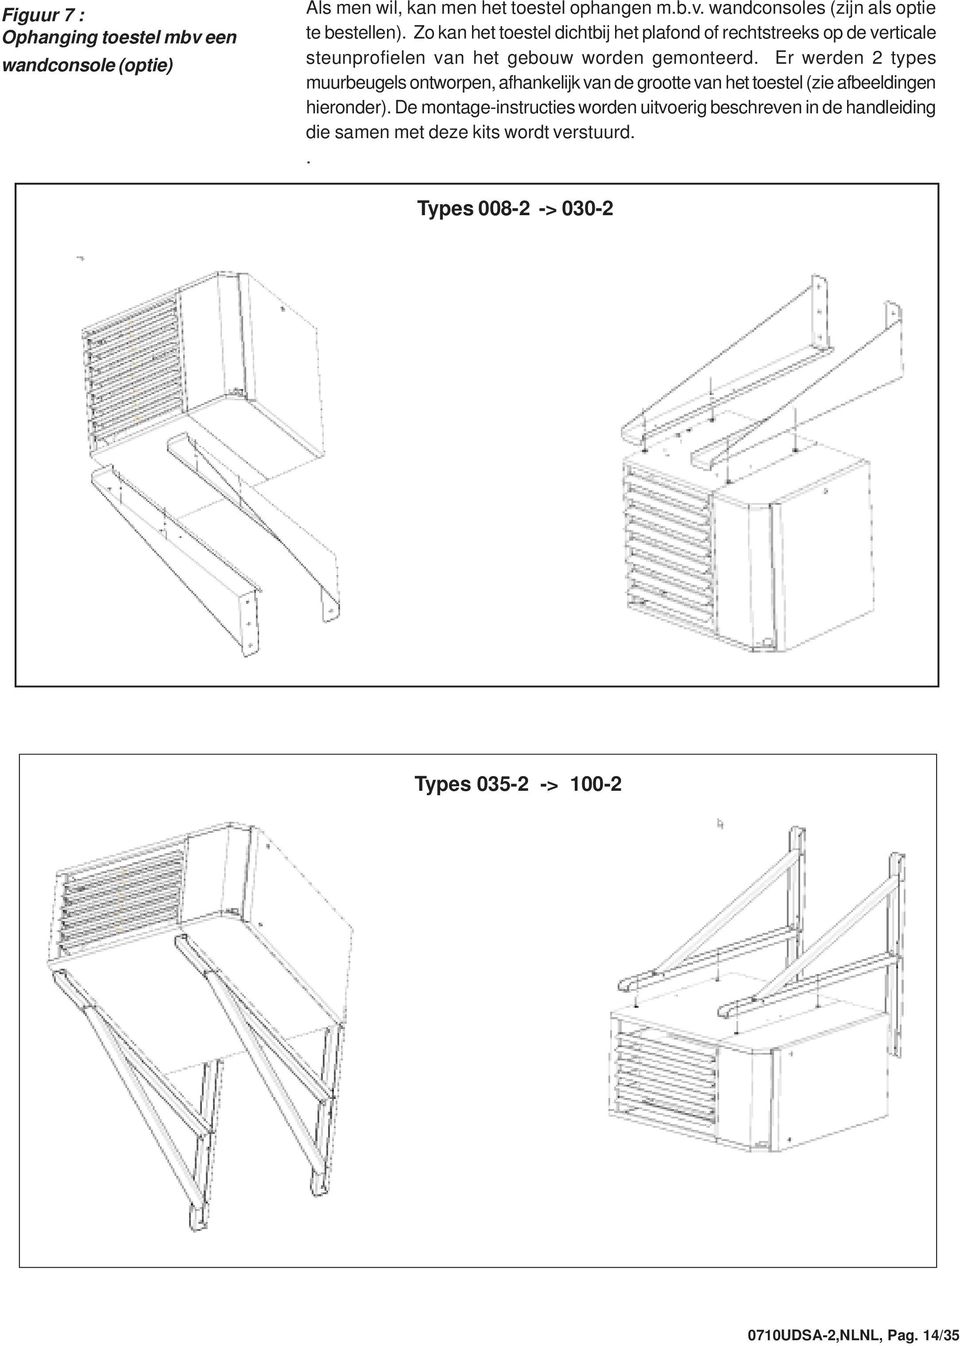 Er werden 2 types muurbeugels ontworpen, afhankelijk van de grootte van het toestel (zie afbeeldingen hieronder).